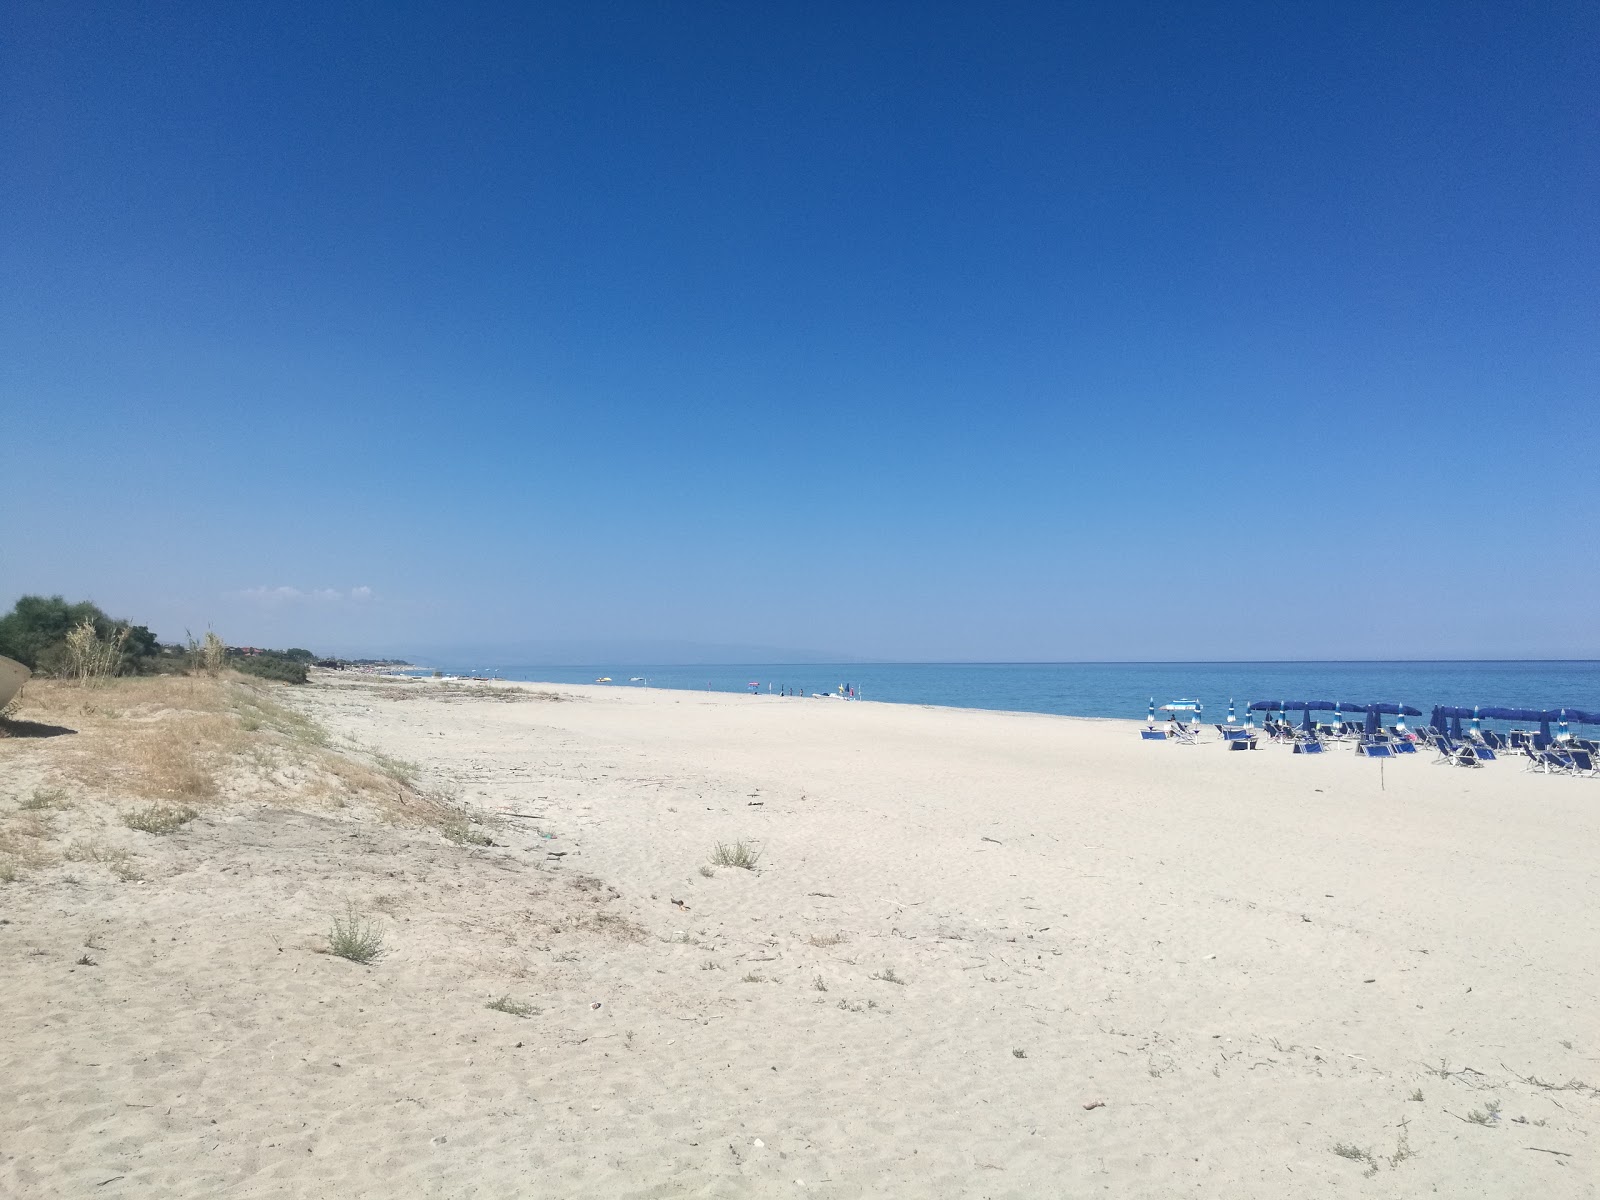 Foto af Campomarzio beach - populært sted blandt afslapningskendere